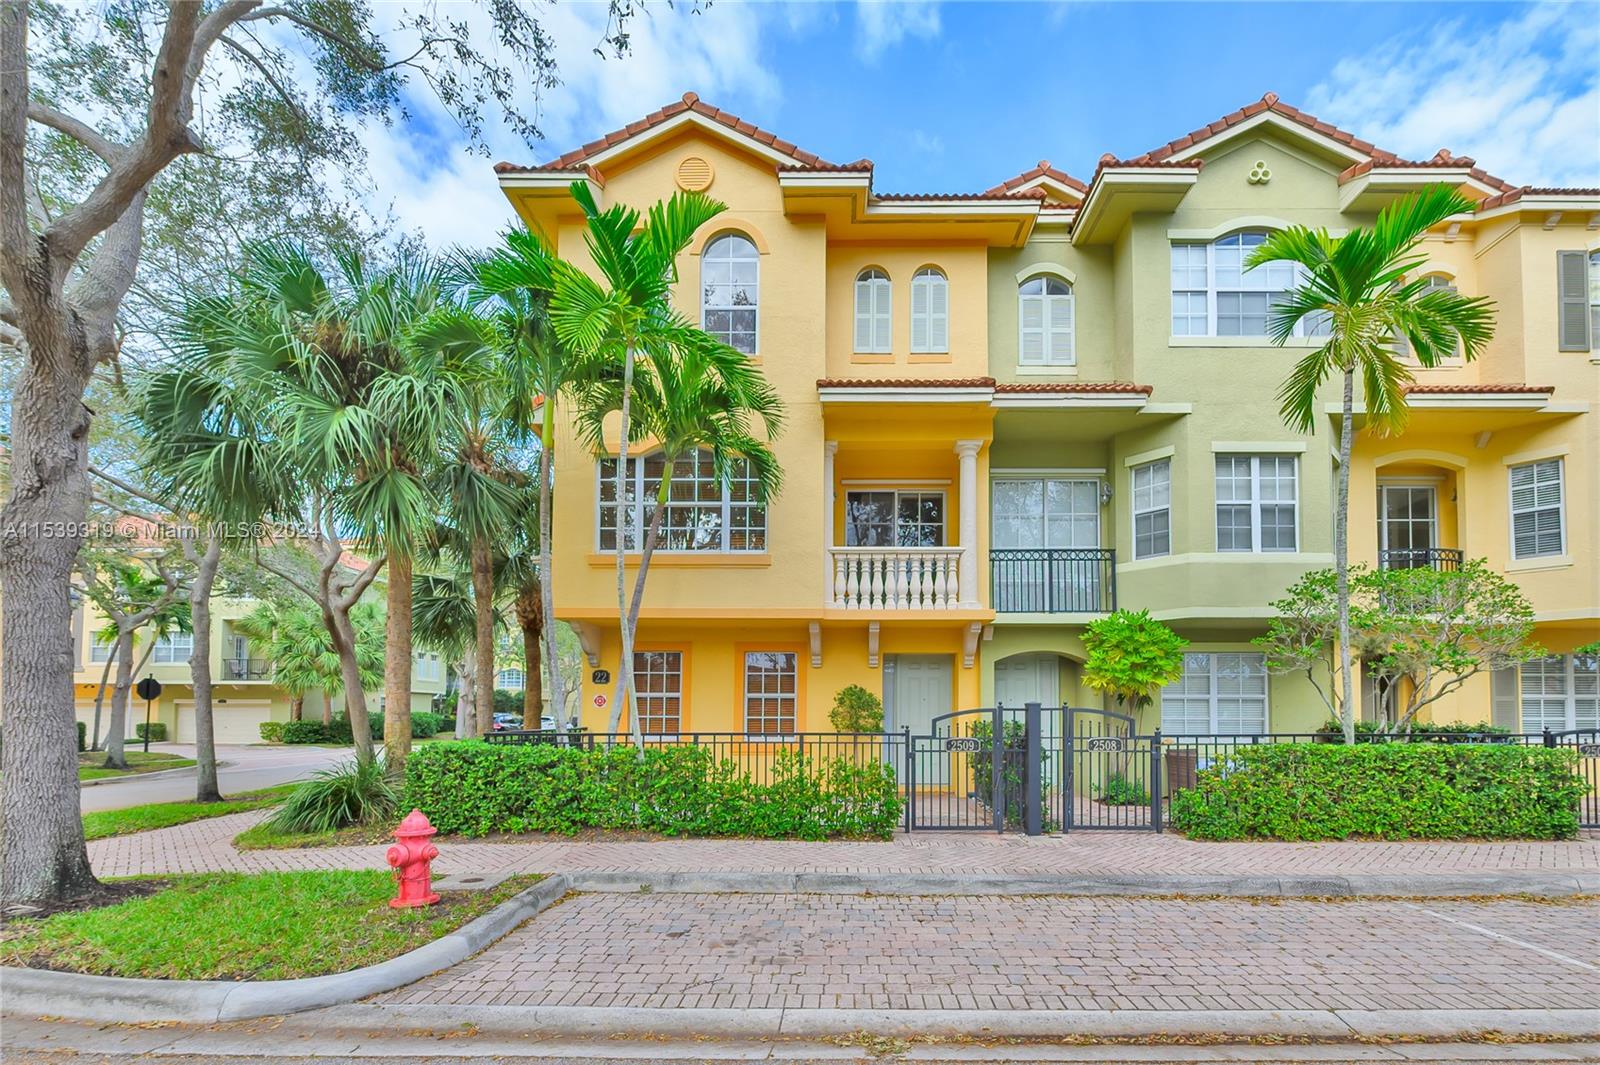 Rental Property at 2509 San Pietro Cir, Palm Beach Gardens, Palm Beach County, Florida - Bedrooms: 3 
Bathrooms: 4  - $3,700 MO.